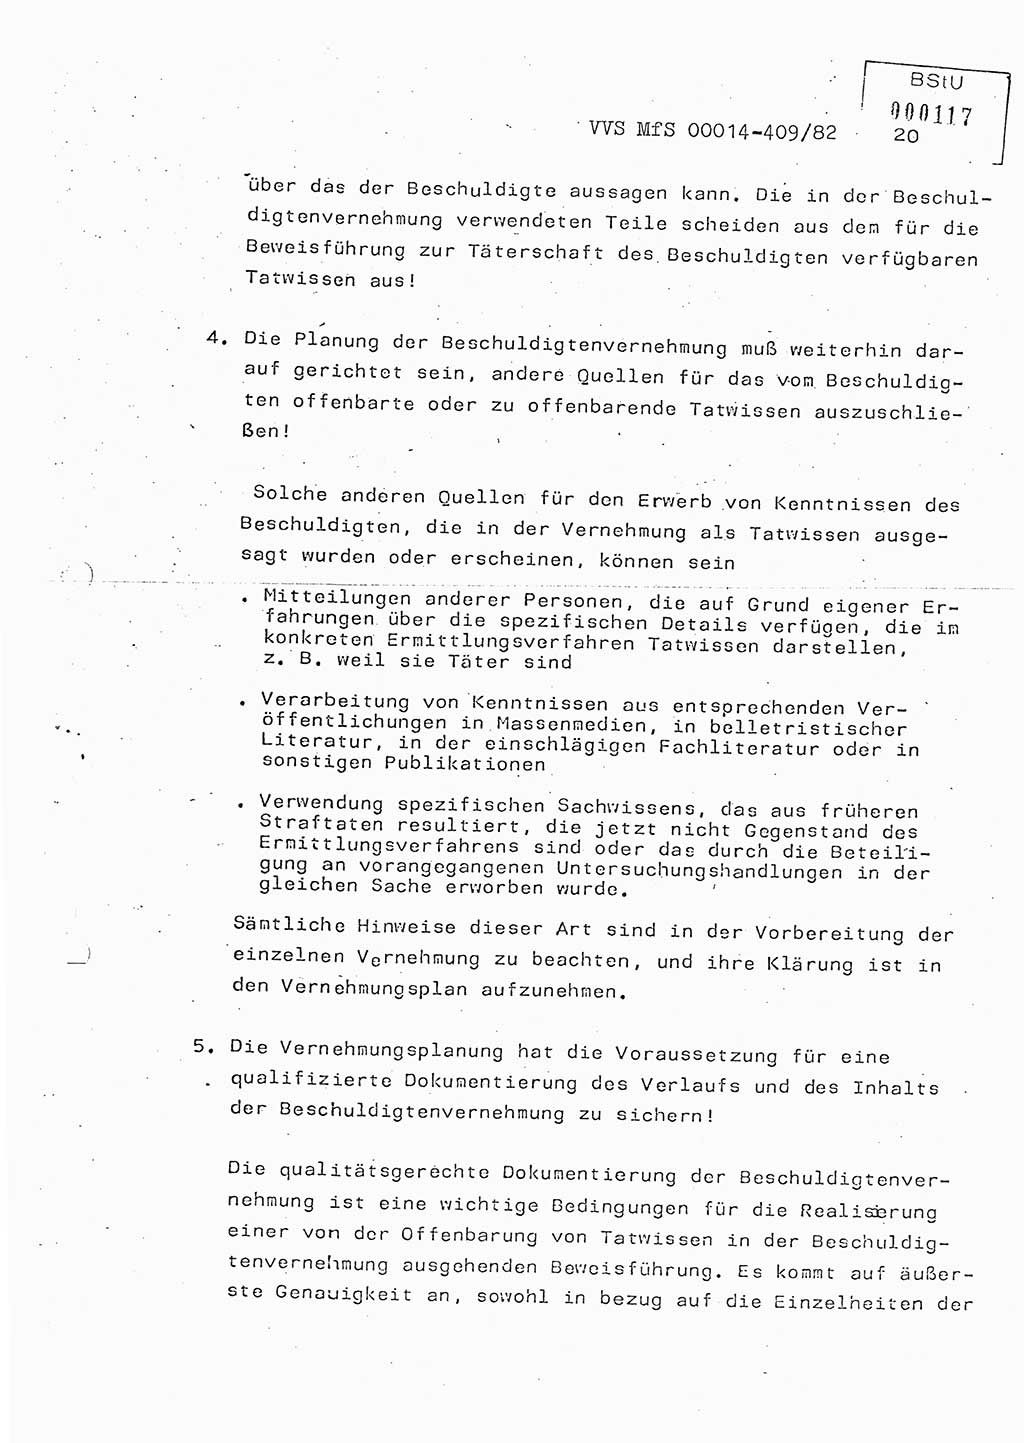 Lektion Ministerium für Staatssicherheit (MfS) [Deutsche Demokratische Republik (DDR)], Hauptabteilung (HA) Ⅸ, Vertrauliche Verschlußsache (VVS) o014-409/82, Berlin 1982, Seite 20 (Lekt. MfS DDR HA Ⅸ VVS o014-409/82 1982, S. 20)